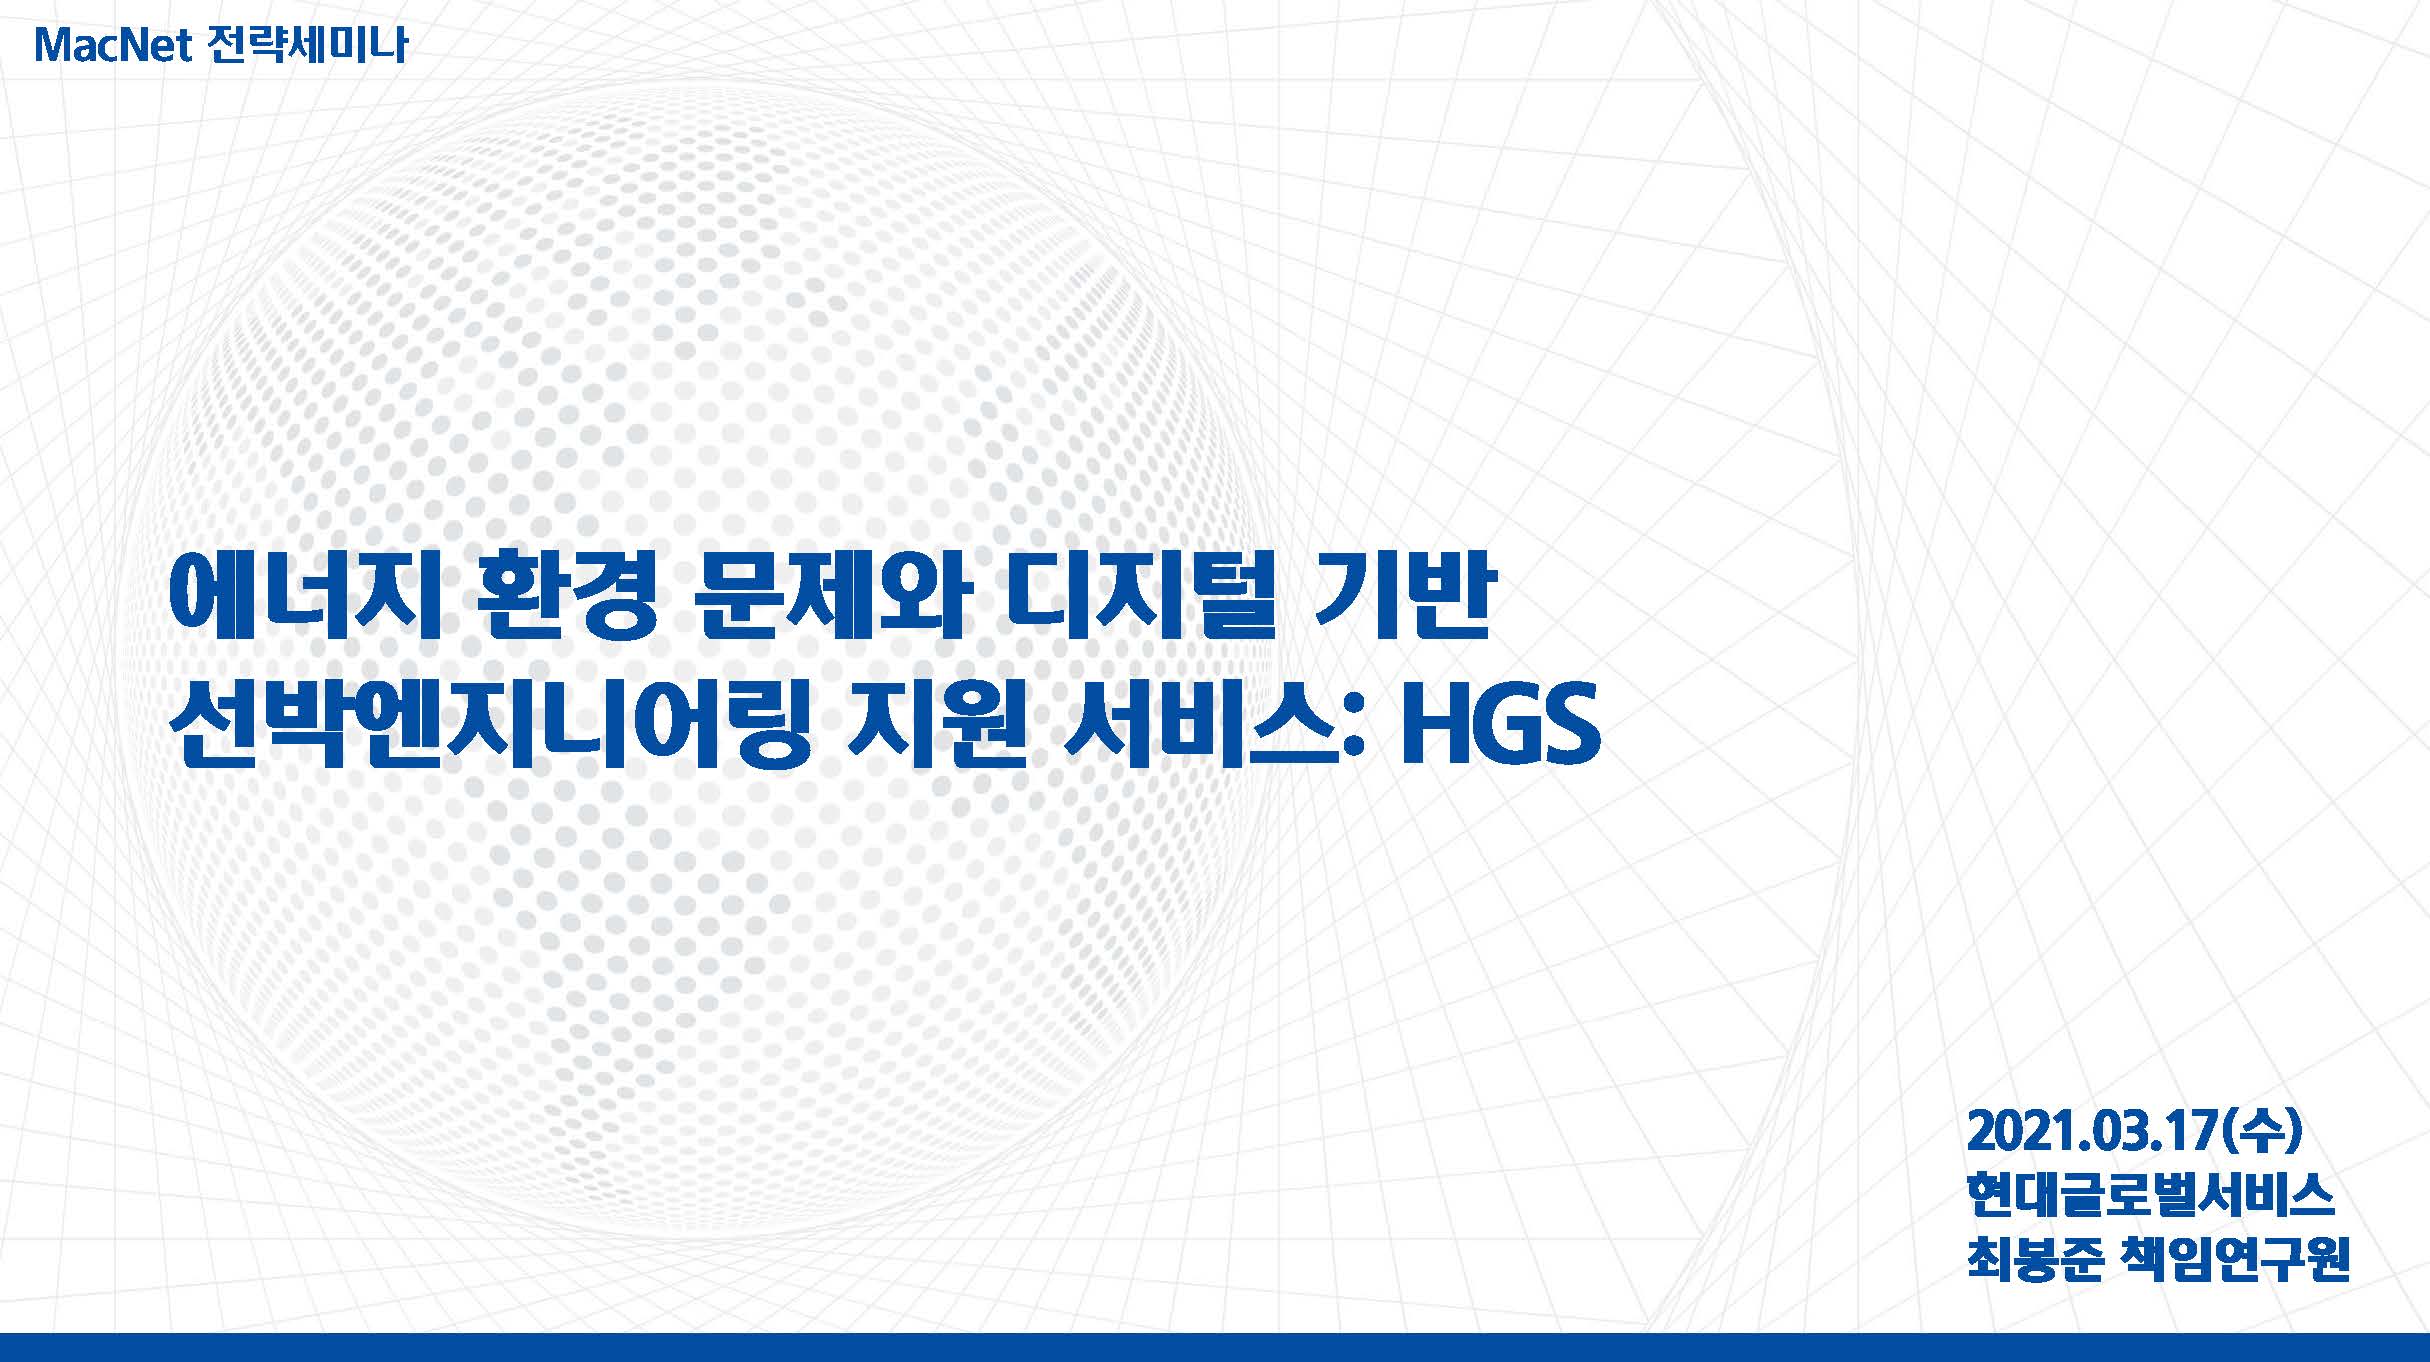 HGS 엔지니어링발표자료_최봉준_현대글로벌서비스